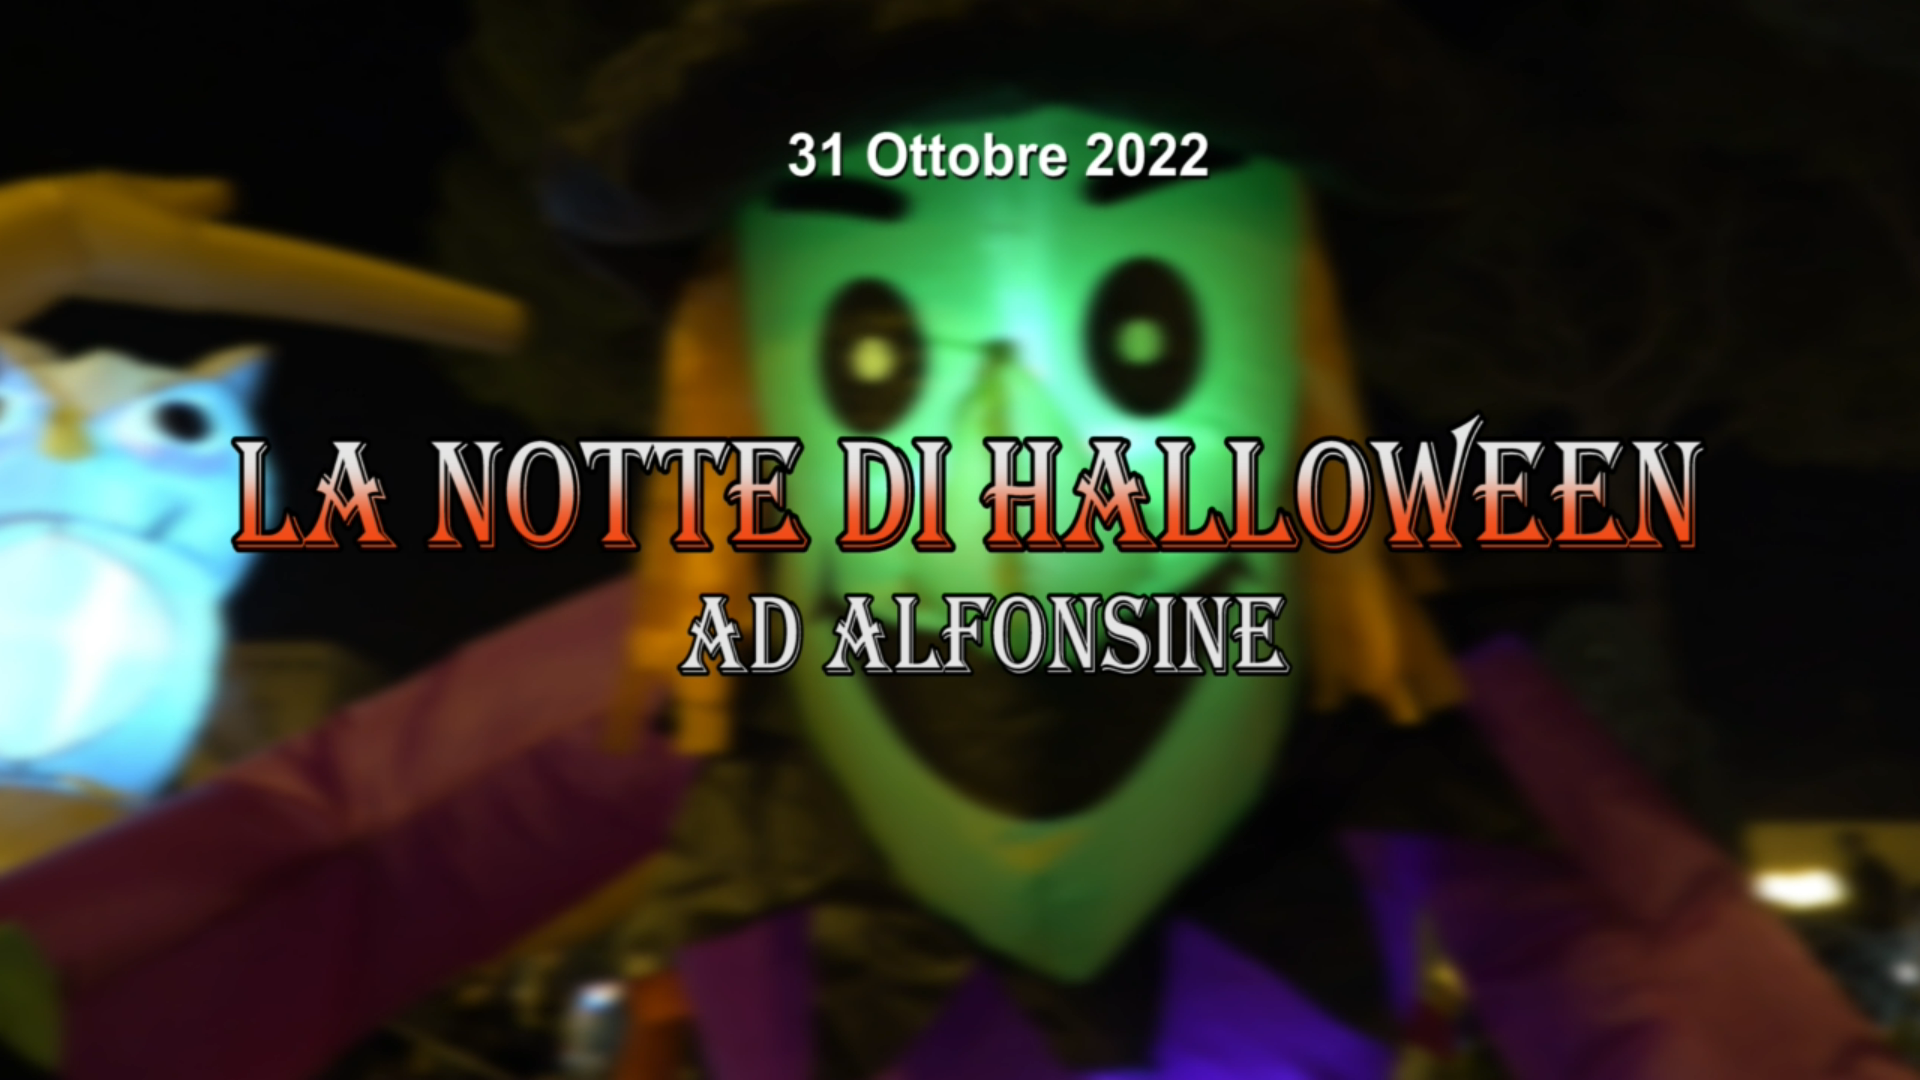 La notte di Halloween ad Alfonsine